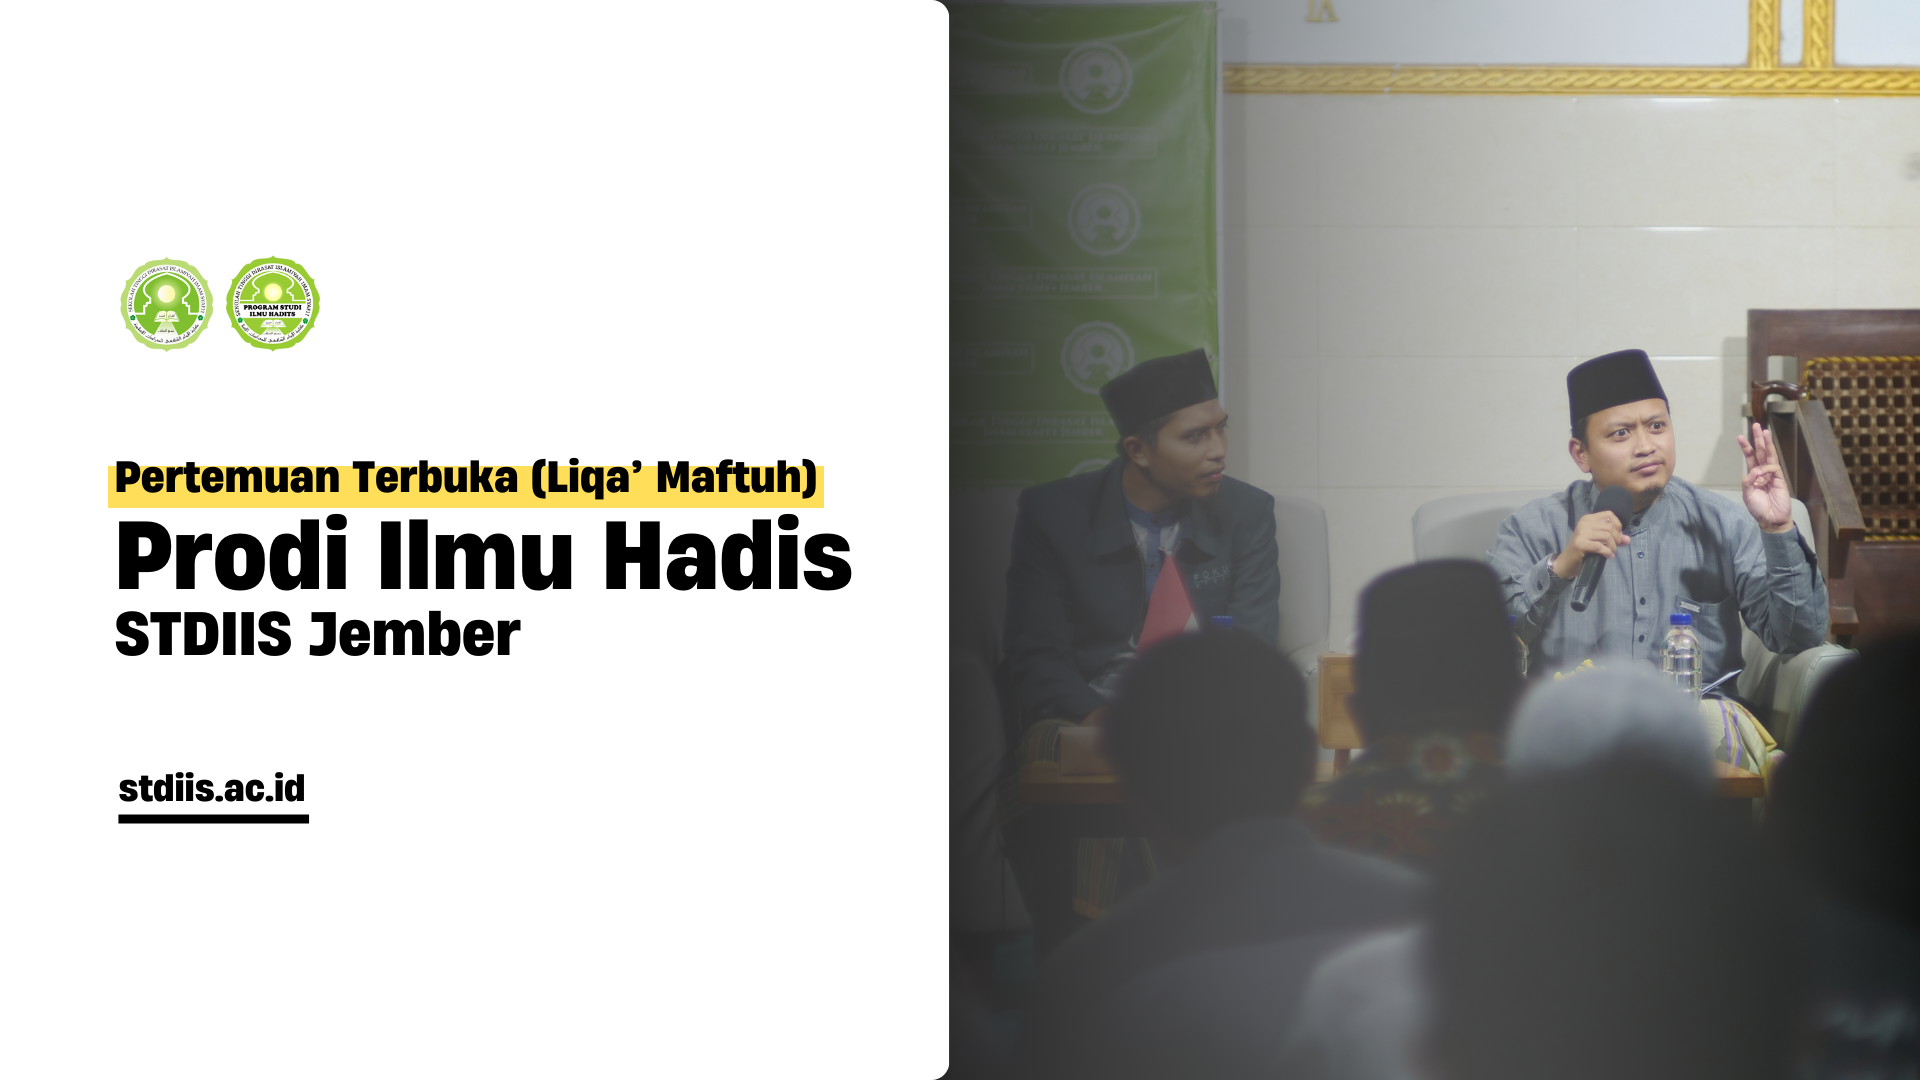 You are currently viewing Liqa’ Maftuh Prodi Ilmu Hadis STDIIS Jember